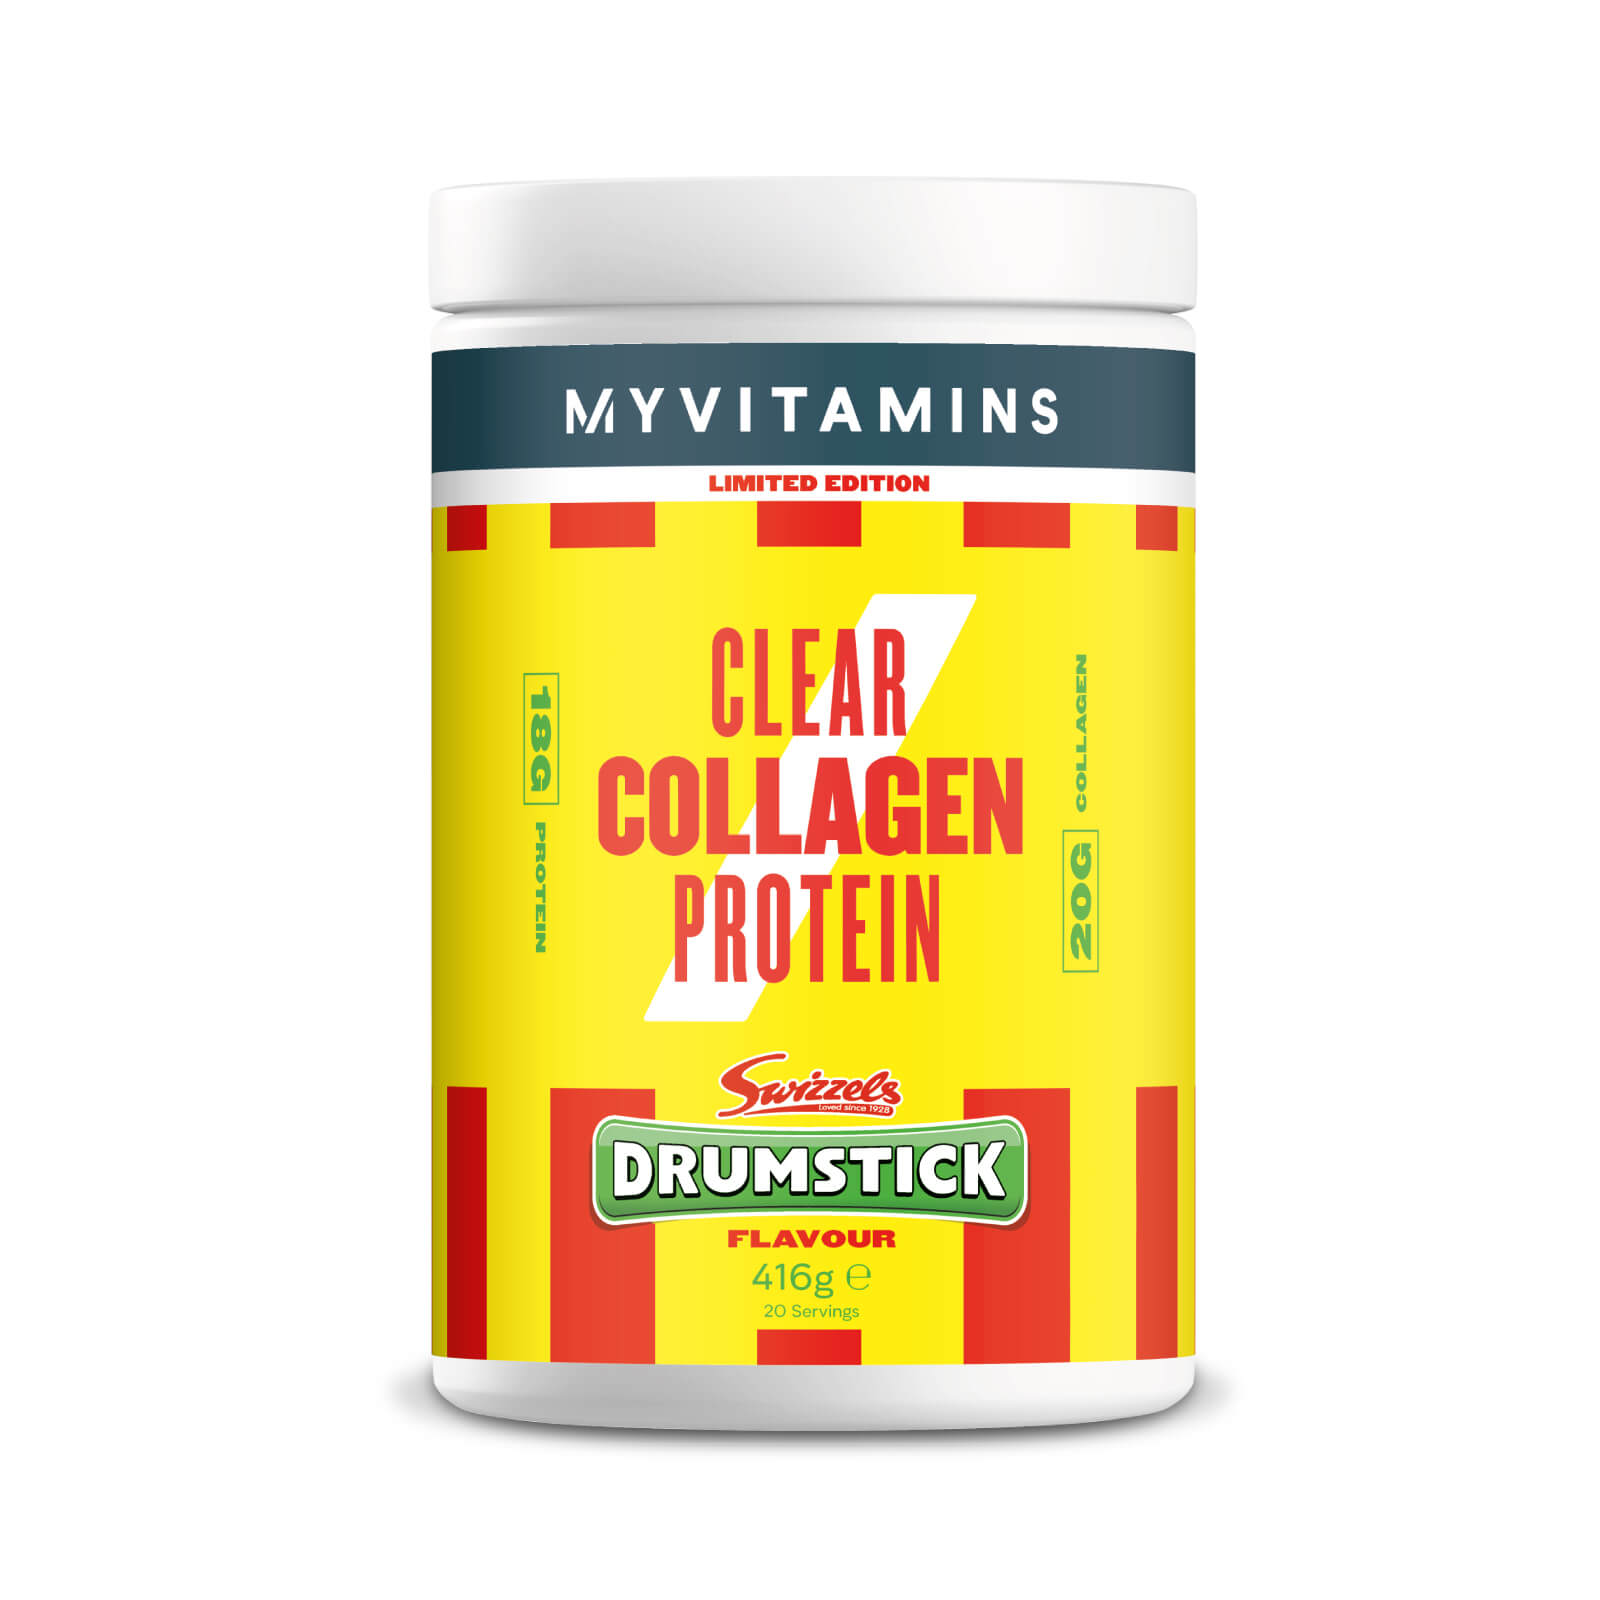 Clear Collagen – Drumstick (Swizzels)